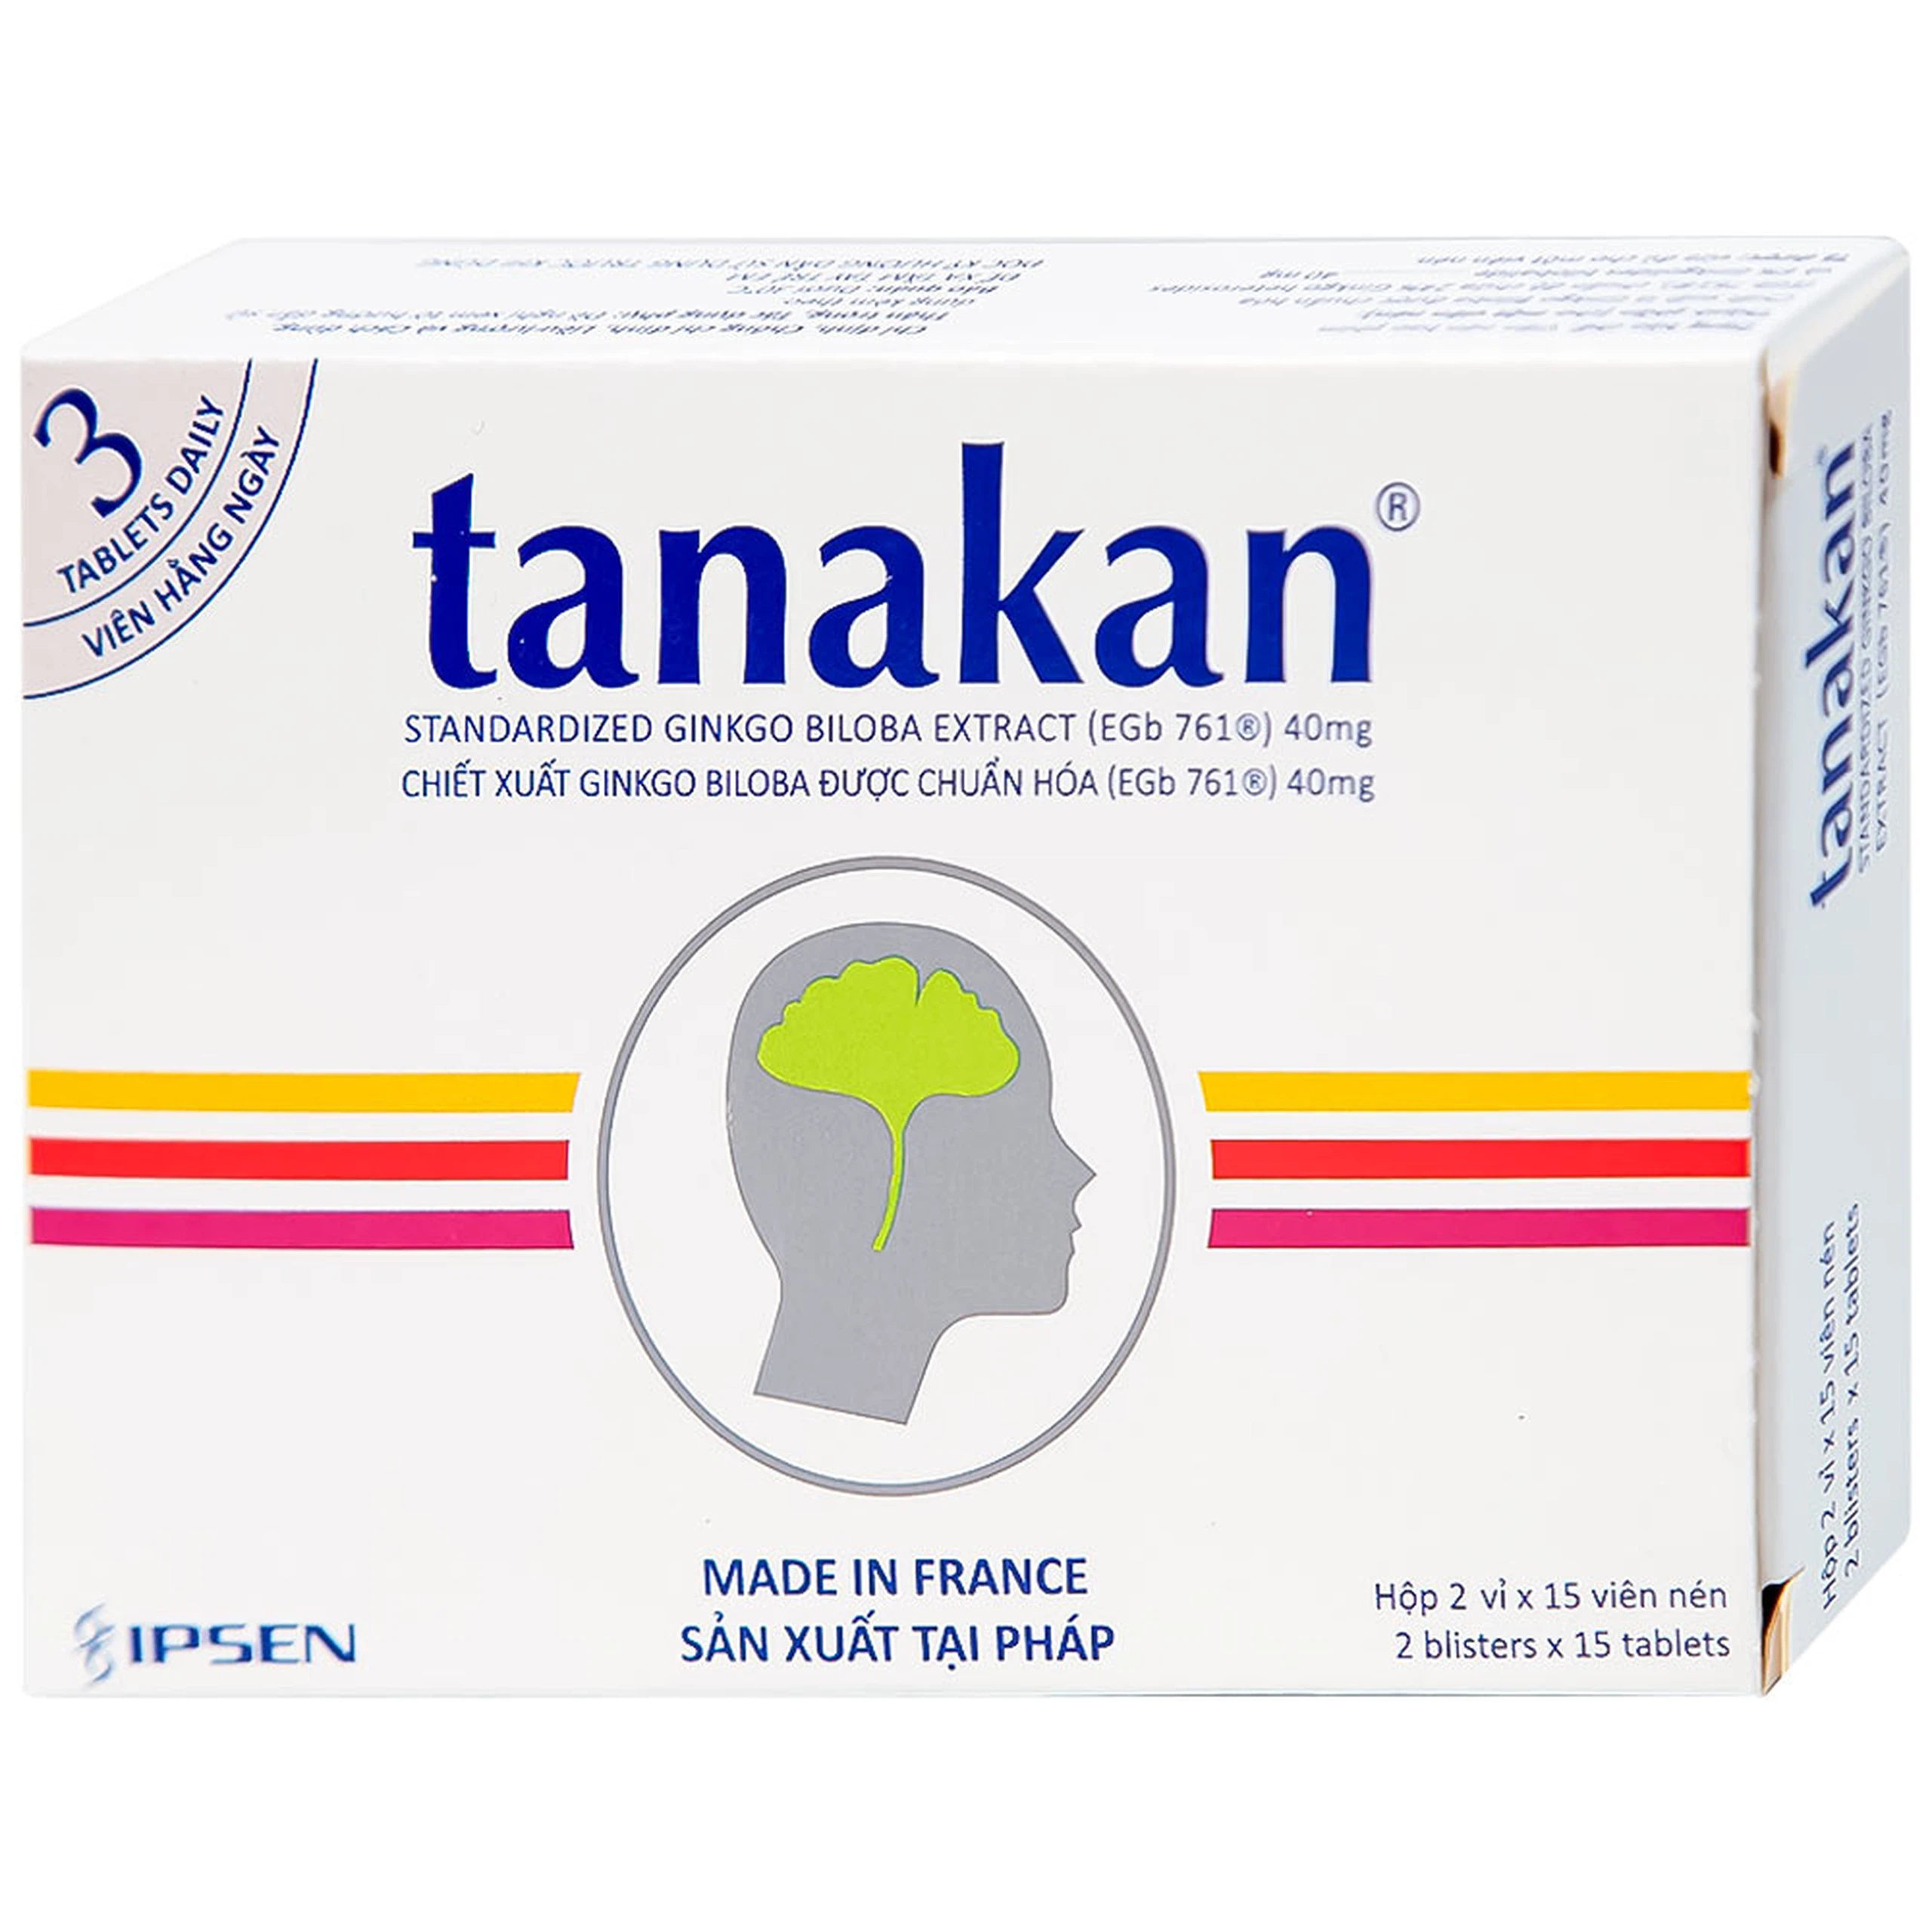 Thuốc Tanakan Ipsen điều trị triệu chứng rối loạn nhận thức ở người lớn tuổi (2 vỉ x 15 viên)